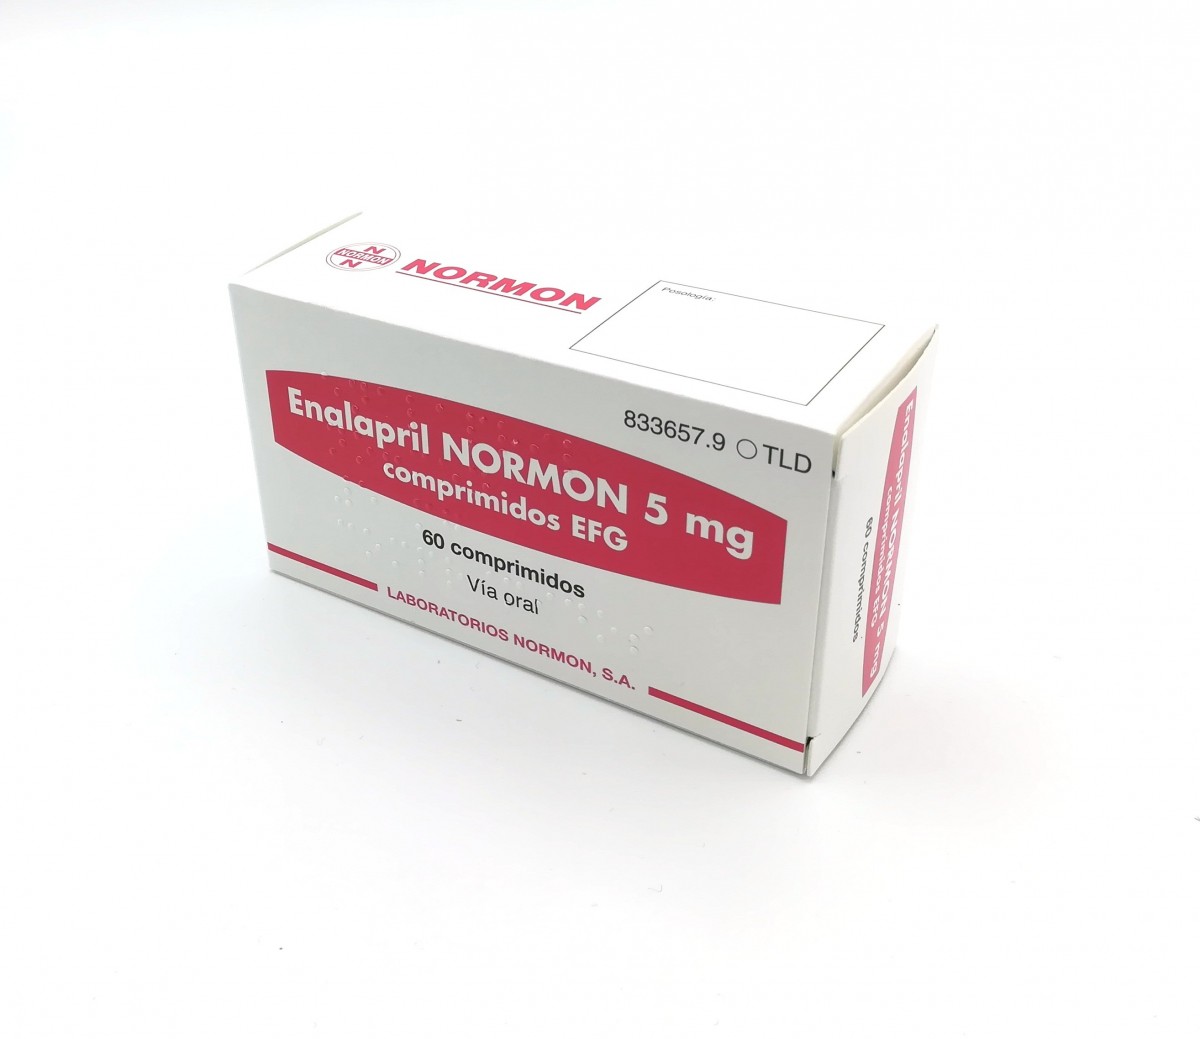 ENALAPRIL NORMON 5 mg  COMPRIMIDOS EFG, 500 comprimidos fotografía del envase.